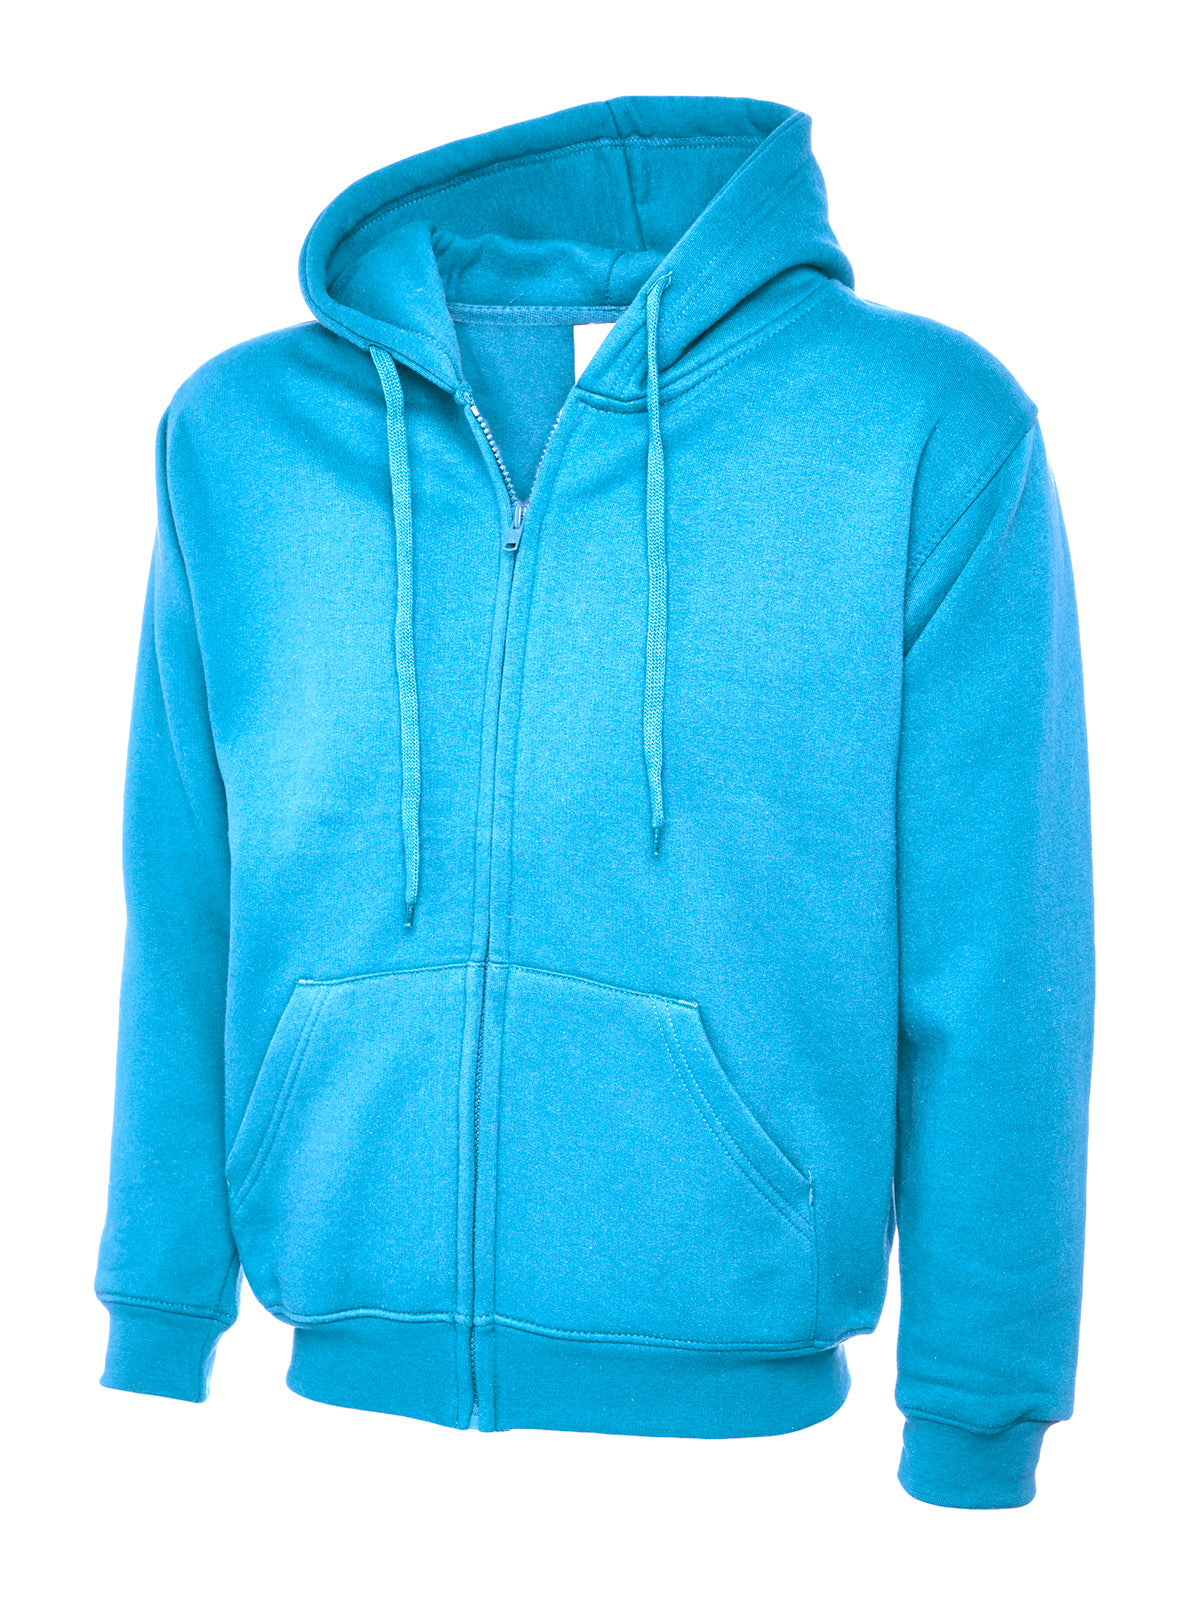 Uneek Adults Unisex Classic Full Zip Hooded Sweatshirt UC504 - Sky